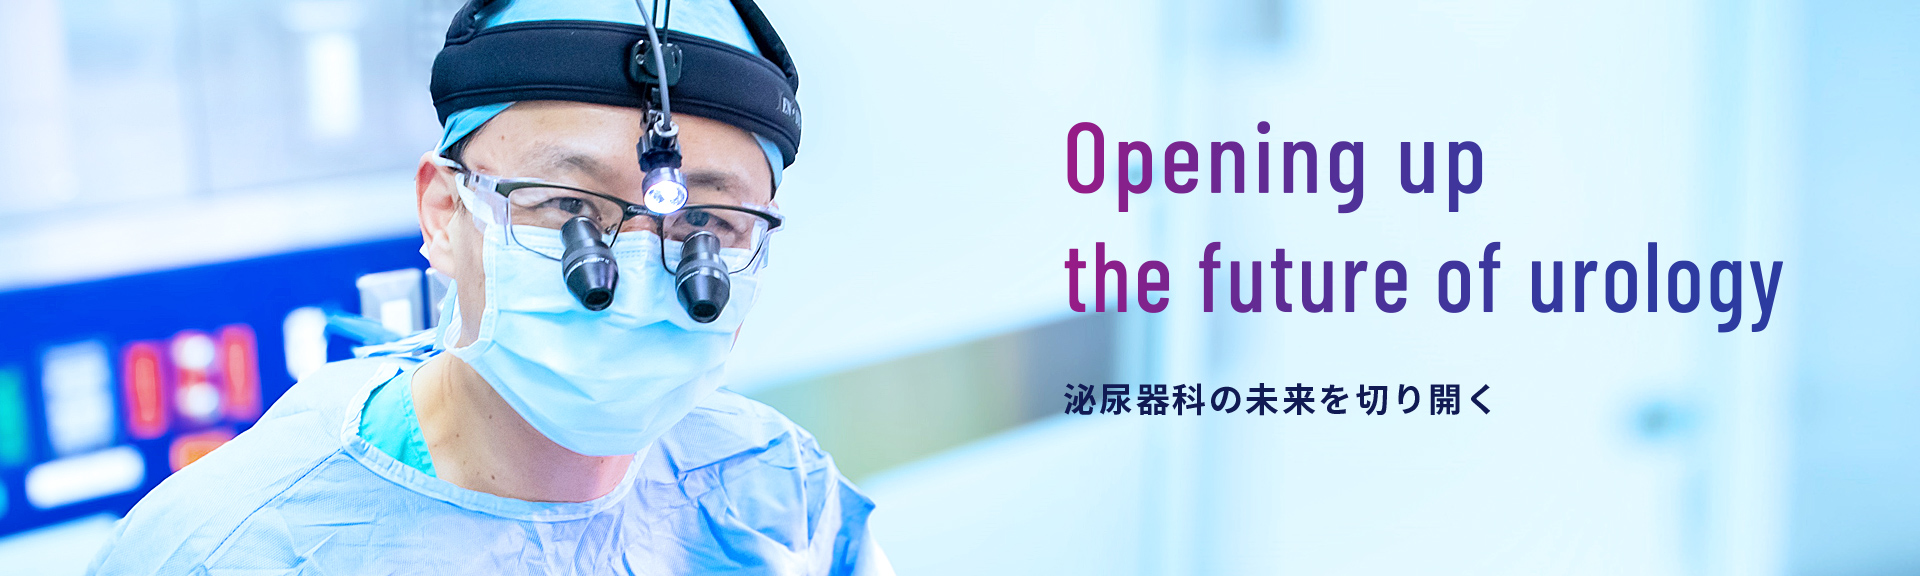 Opening up the future of urology 泌尿器科の未来を切り開く